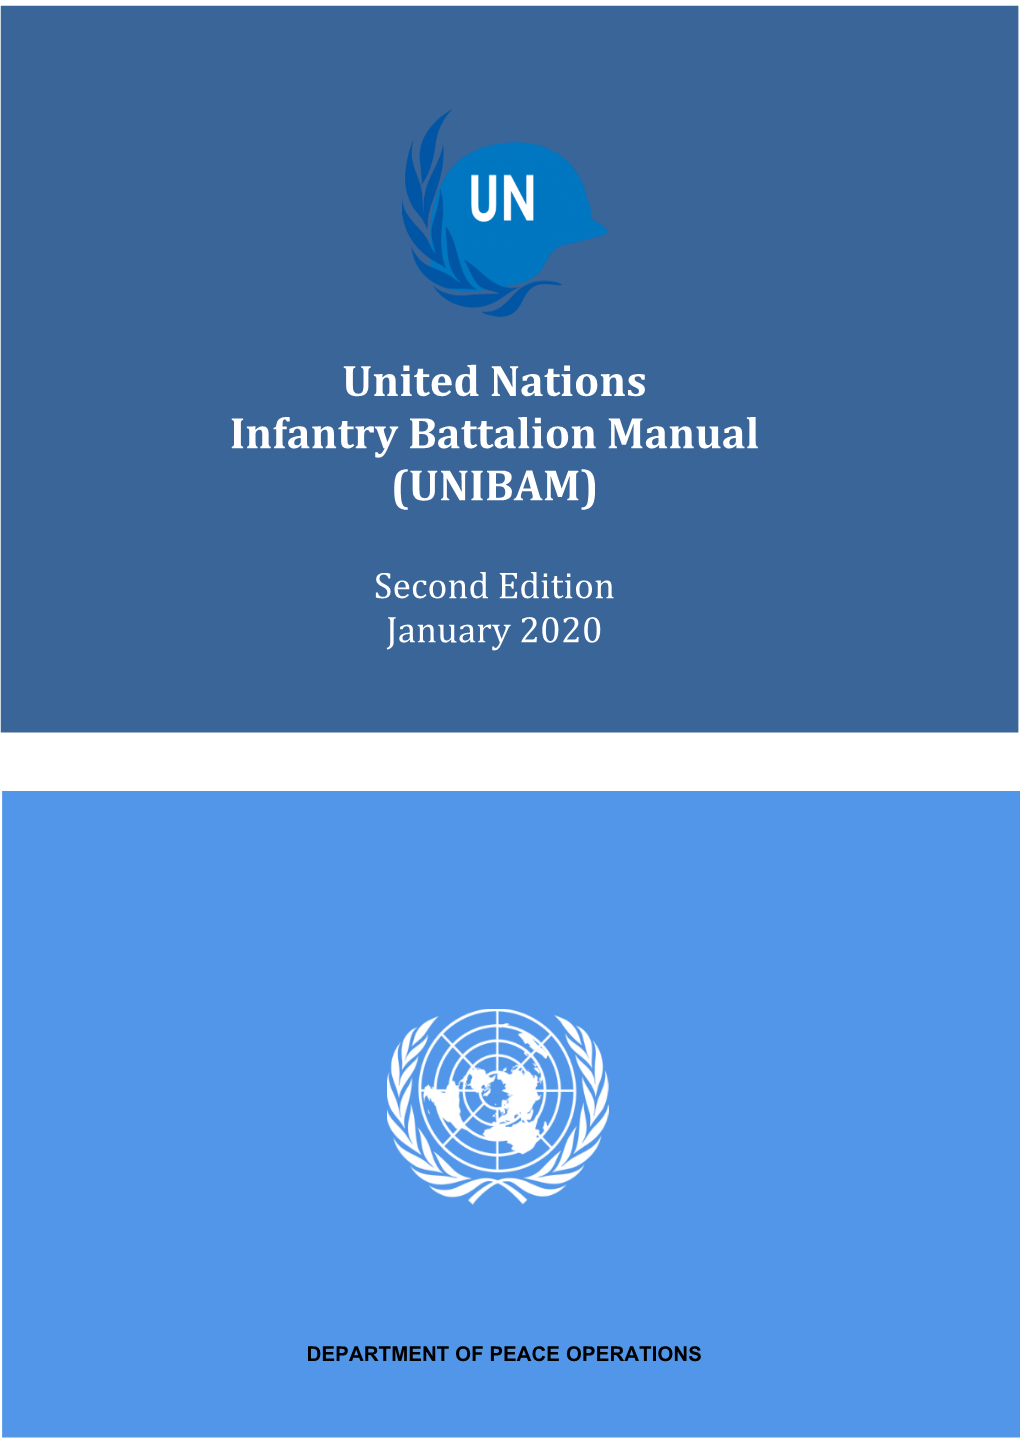 UN Infantry Battalion Manual (UNIBAM)